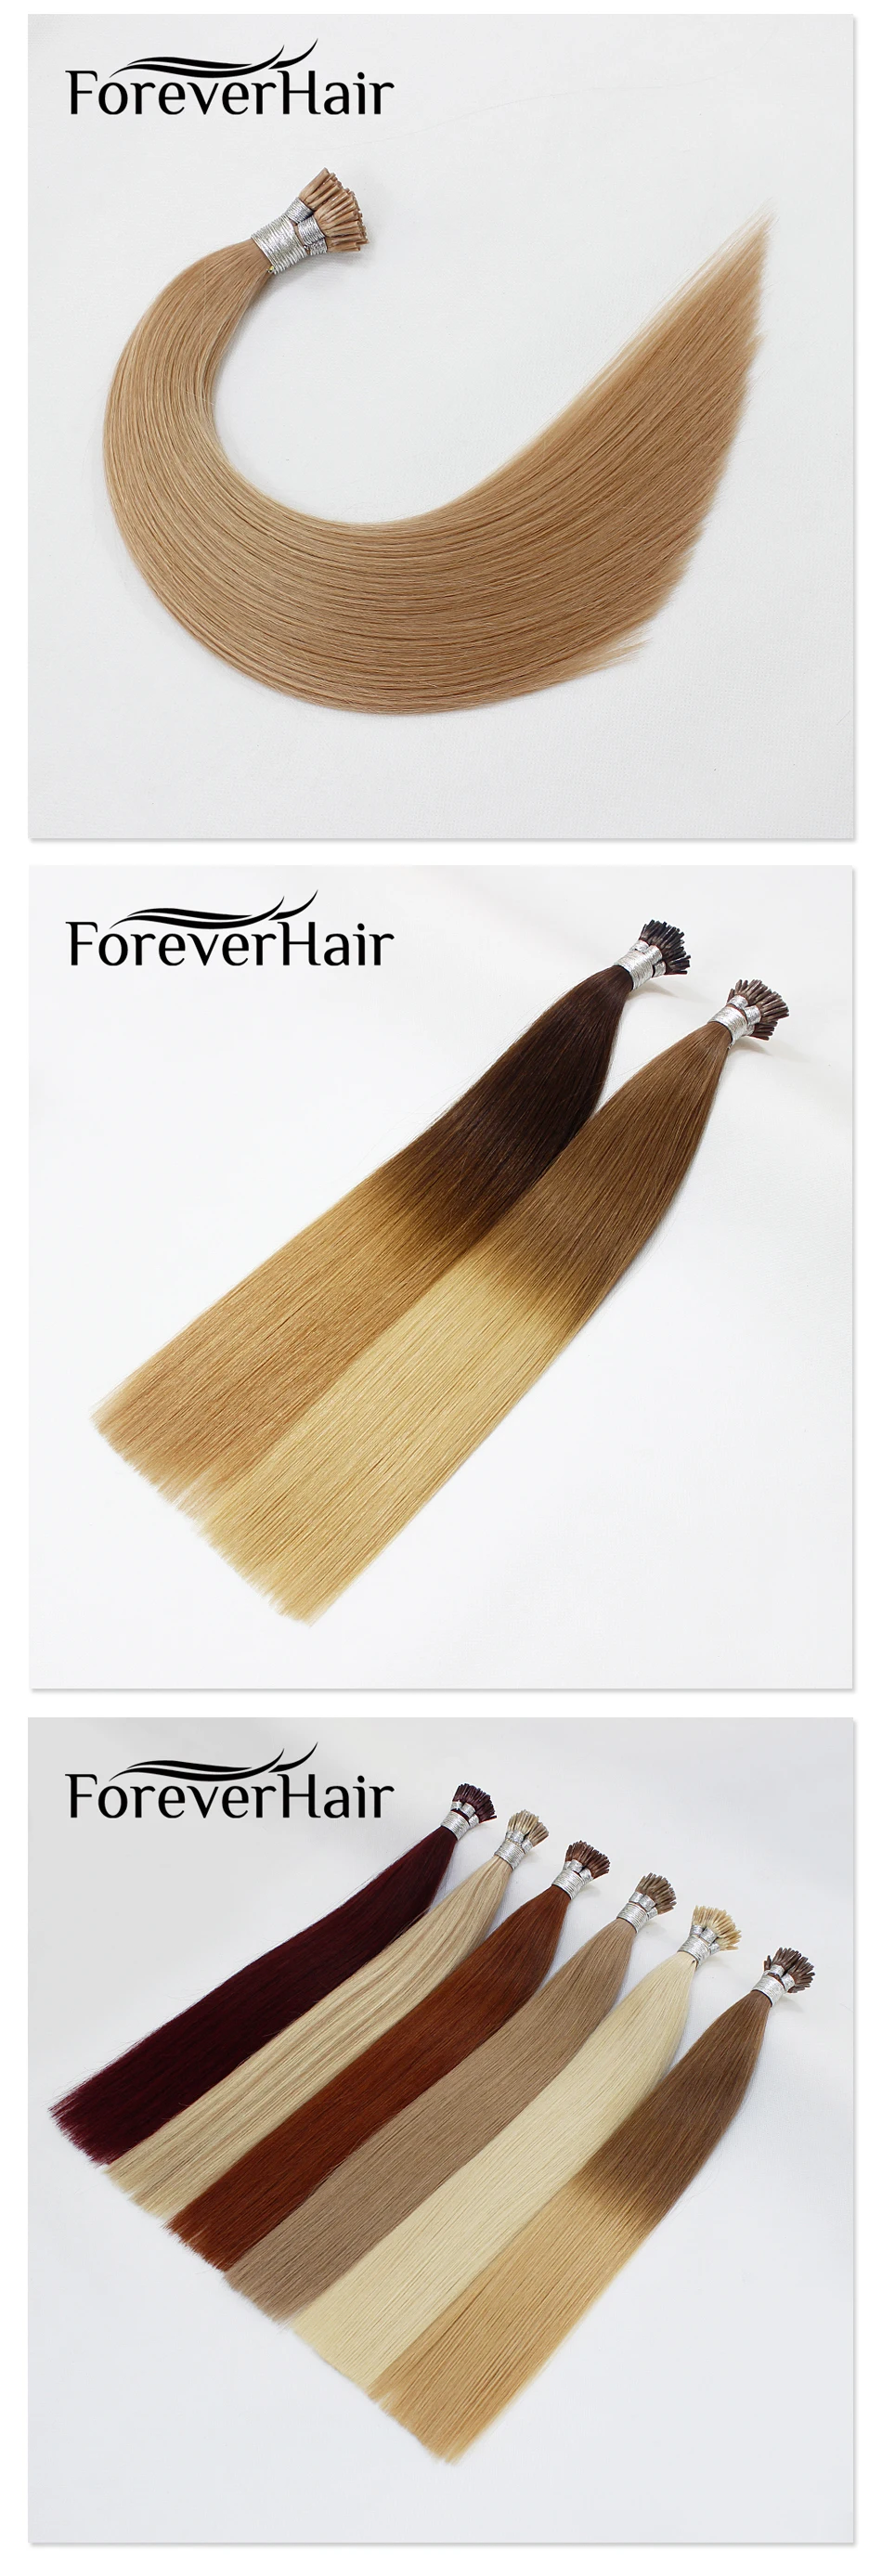 FOREVER HAIR г/локон 0,8 14 "100% Remy Европейский I Tip Наращивание волос Fusion Кератин скрепленные натуральные человеческие волосы 50 шт./pac